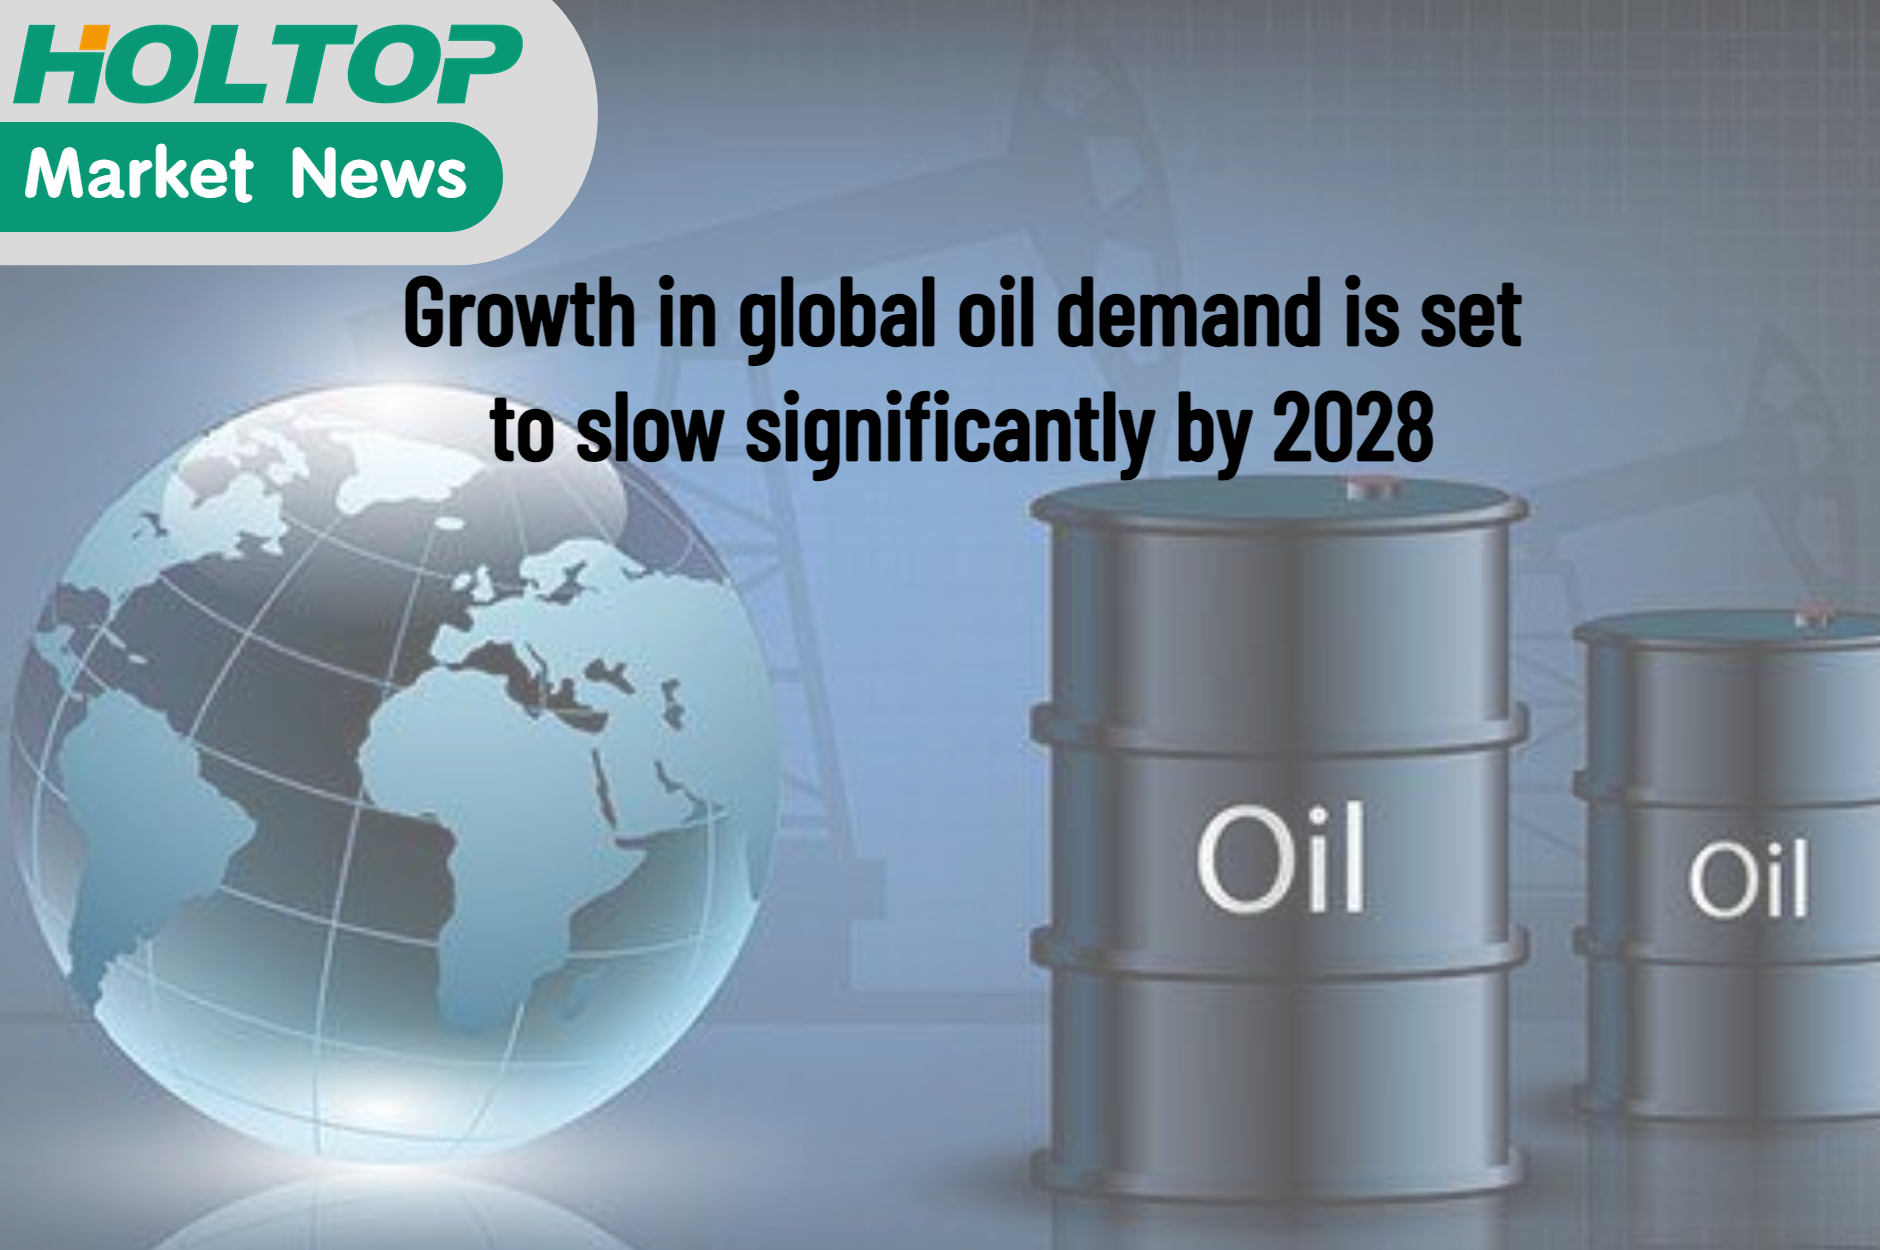 К 2028 году рост мирового спроса на нефть значительно замедлится